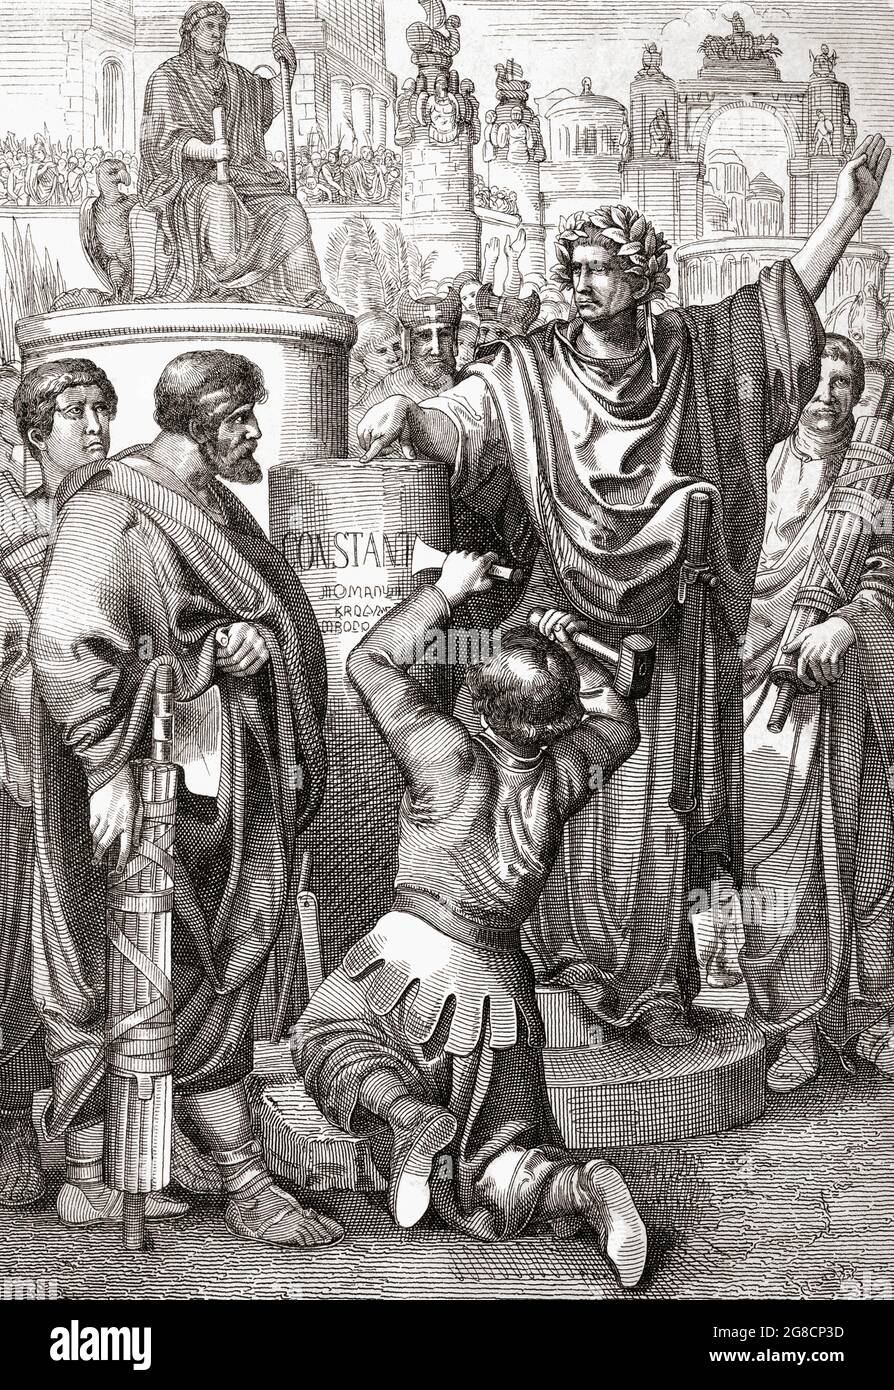 Konstantin I., bekannt als der große, ca. 272 - 337, römischer Kaiser, wählt Byzanz als seine Hauptstadt im Osten und wird ihm 330 als Konstantinopel gewidmet. Nach einem Werk von Peter Geiger aus dem 19. Jahrhundert. Stockfoto